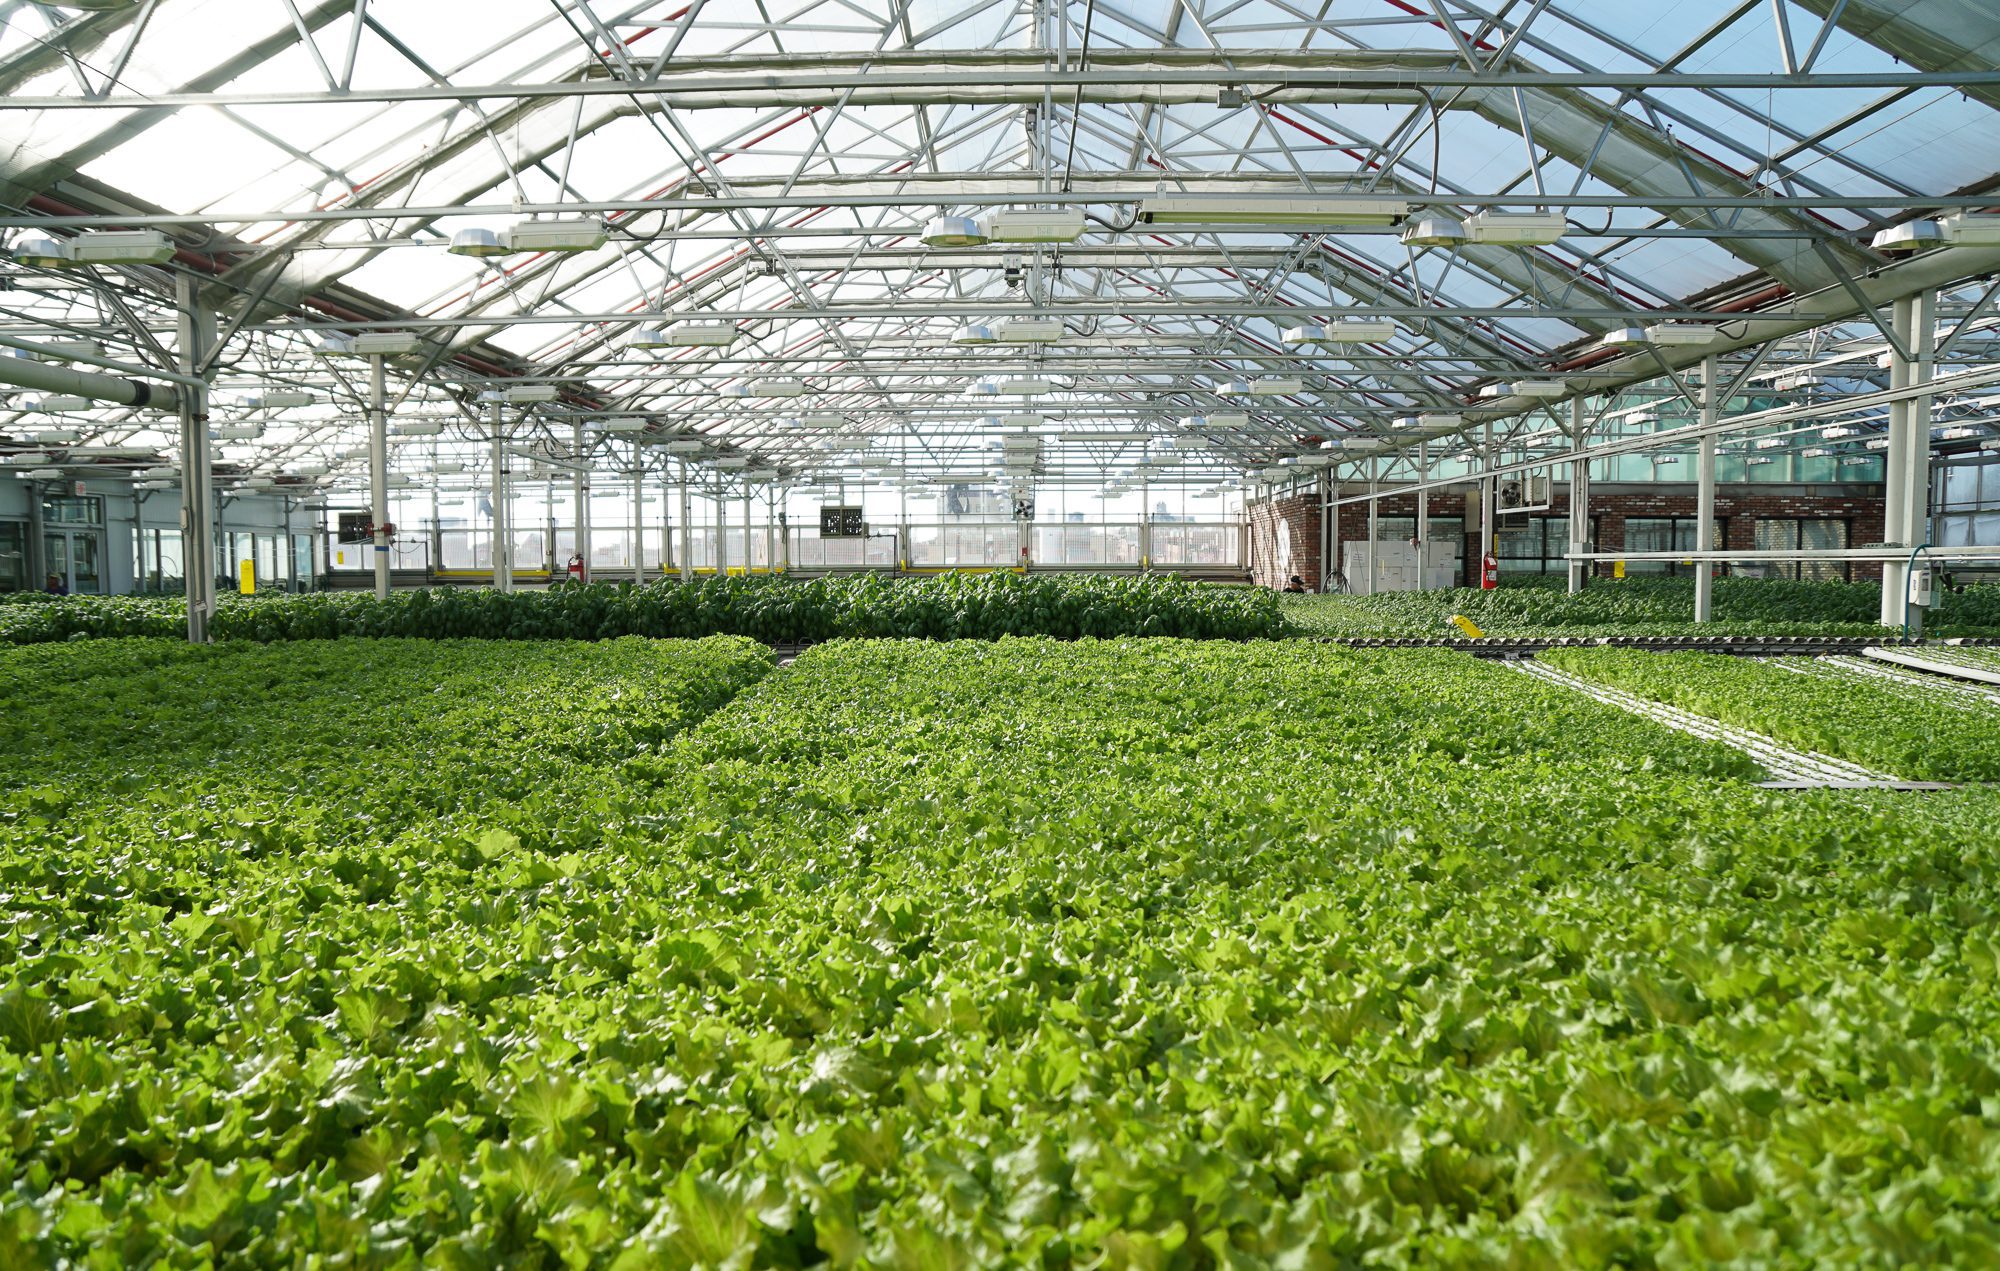 Gotham Greens: A Farm Grows in Brooklyn - Bloomberg